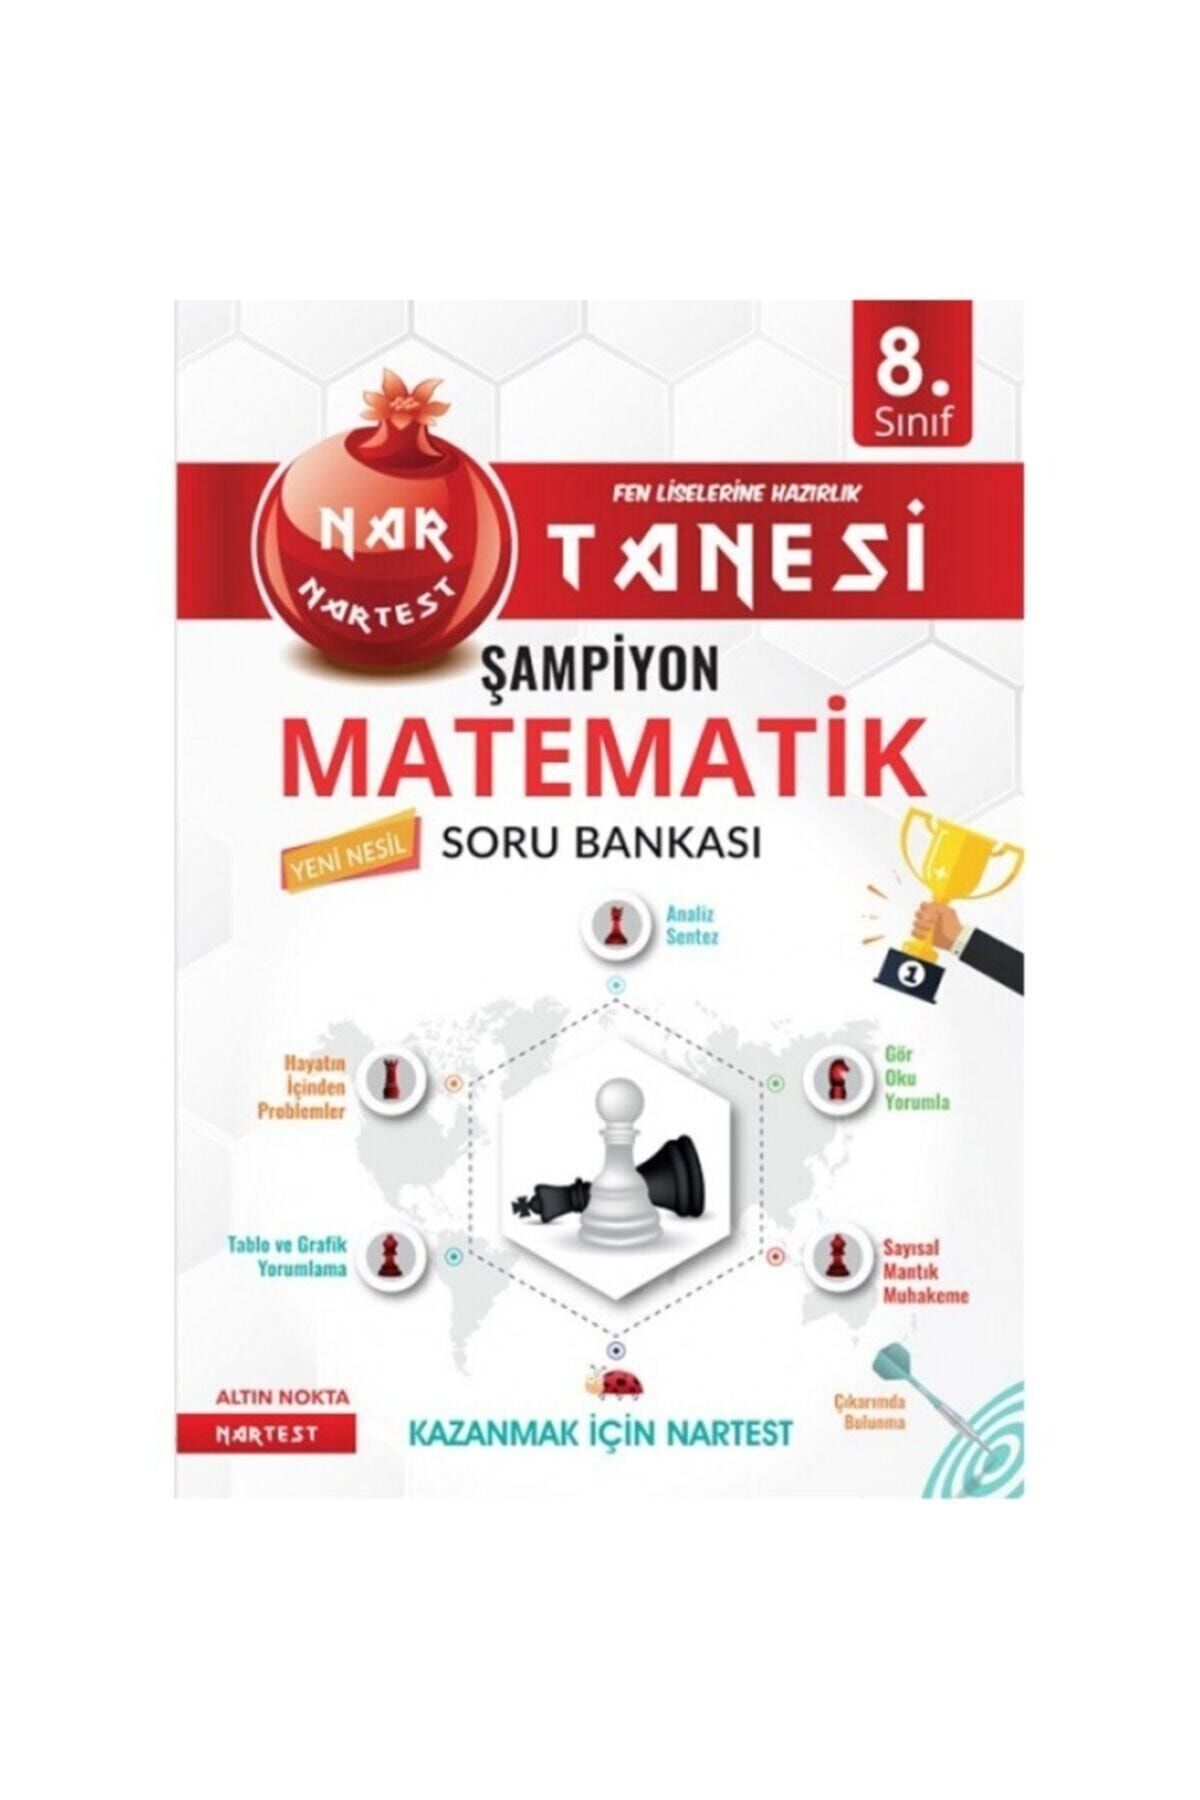 Nartest Yayınları Nartest 8. Sınıf Yeni Nesil Kırmızı Nar Tanesi Şampiyon Matematik Soru Bankası